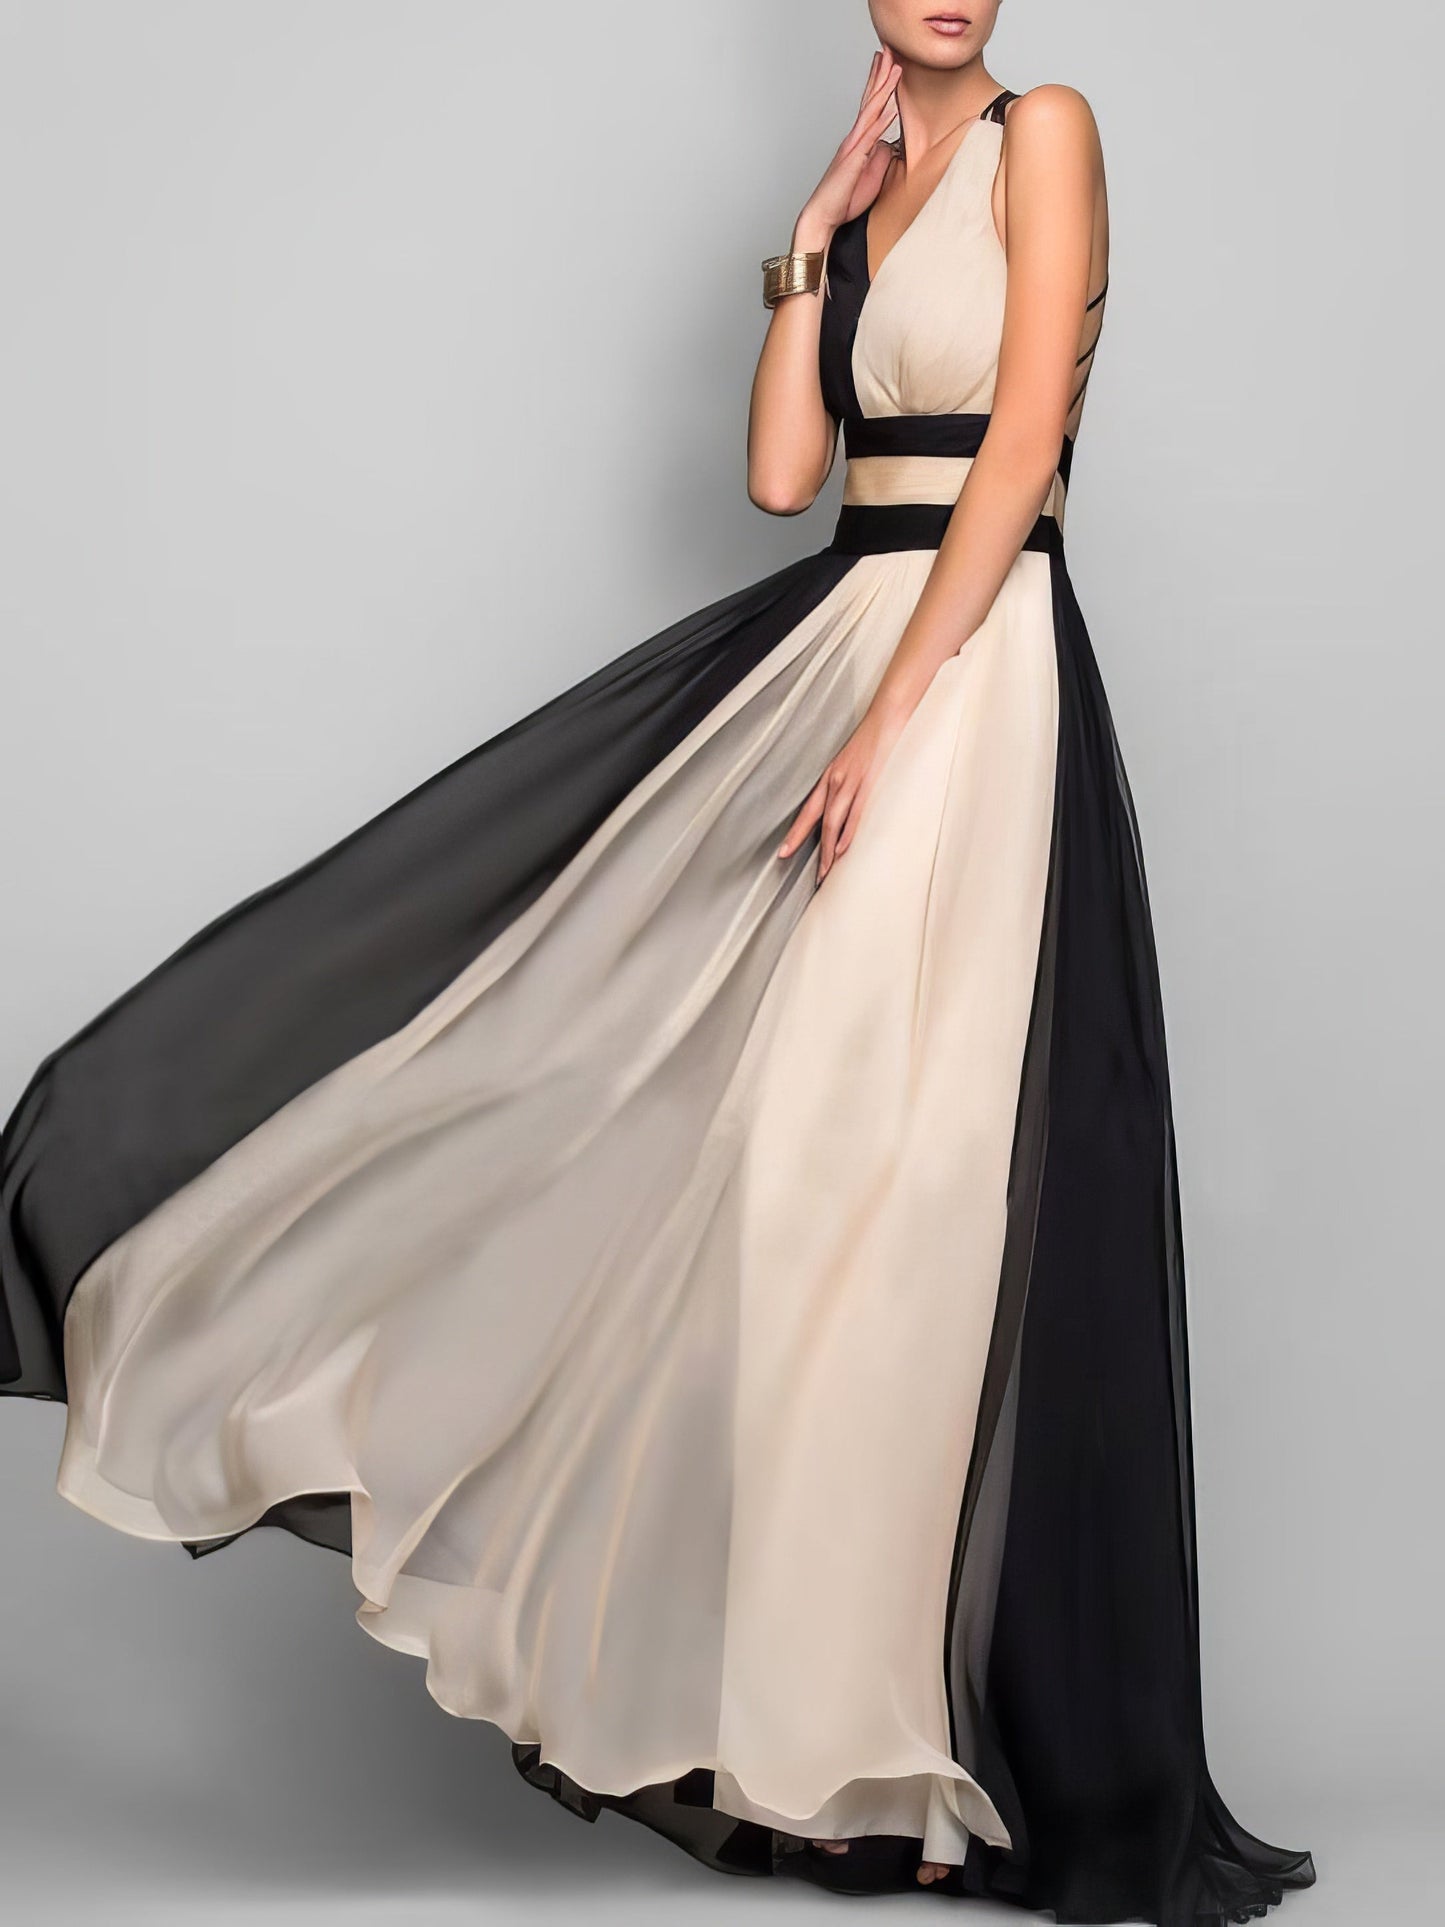 Maxi Dresses - Sleeveless Colorblock High Waist Queen Dress - MsDressly